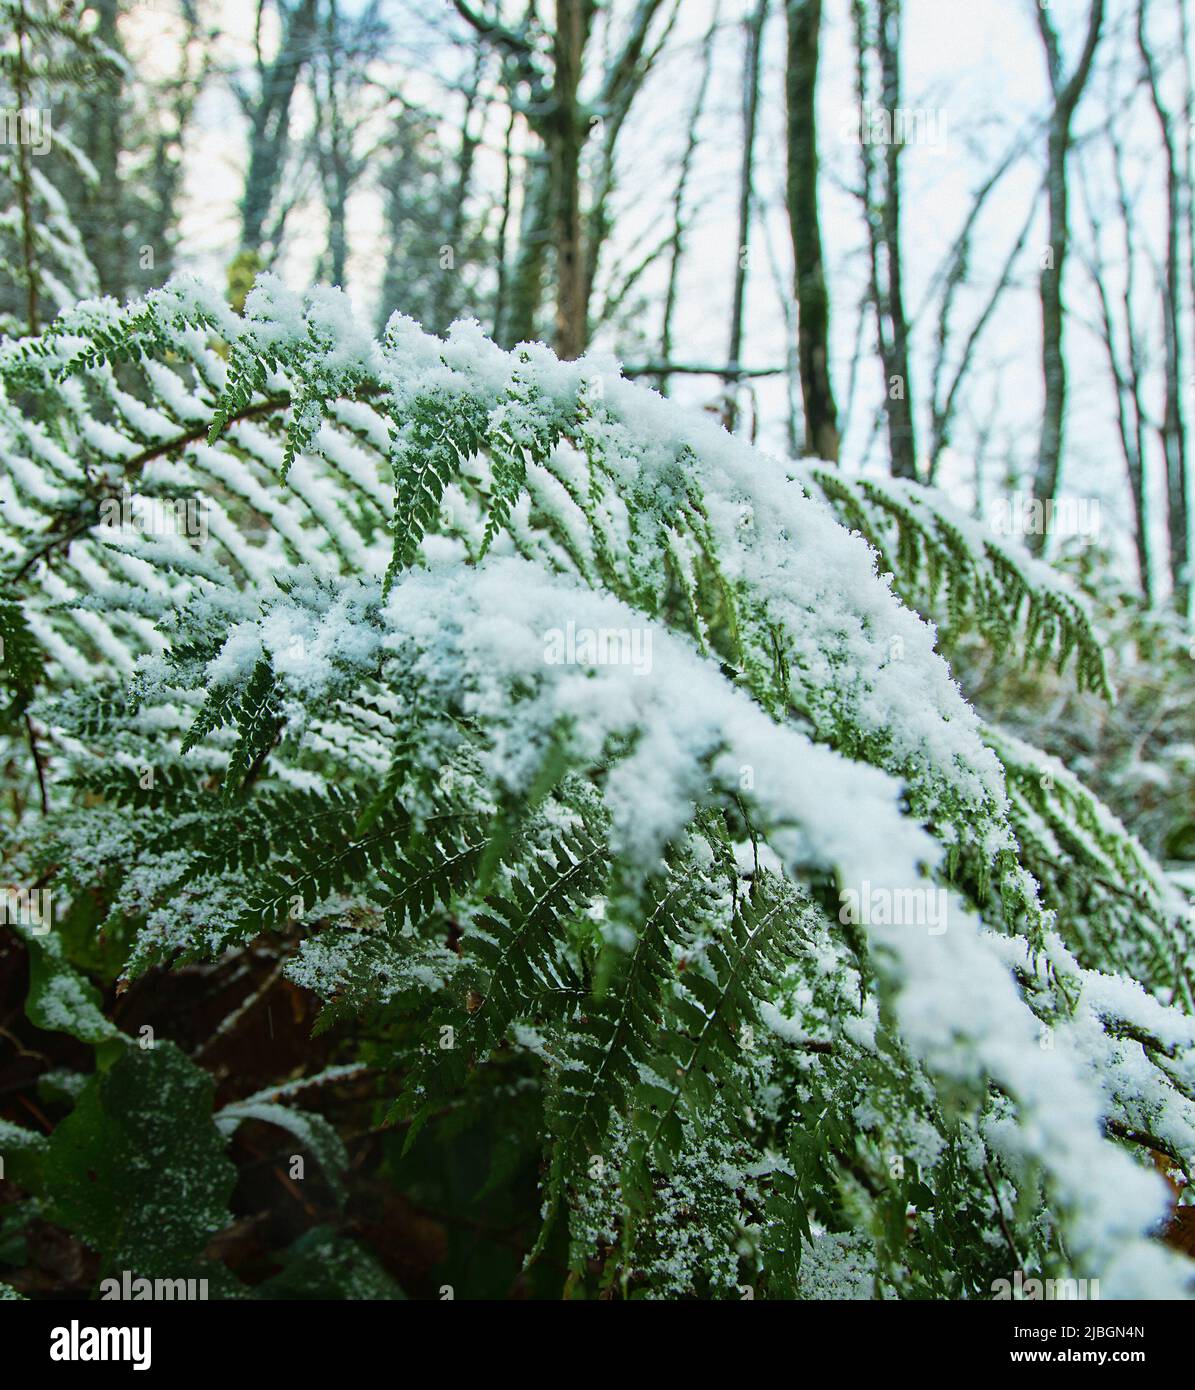 Früher Schnee. Die Herbstdickichte der Farne sind mit Schnee bedeckt, der für den südlichen, subtropischen Wald unerwartet ist Stockfoto